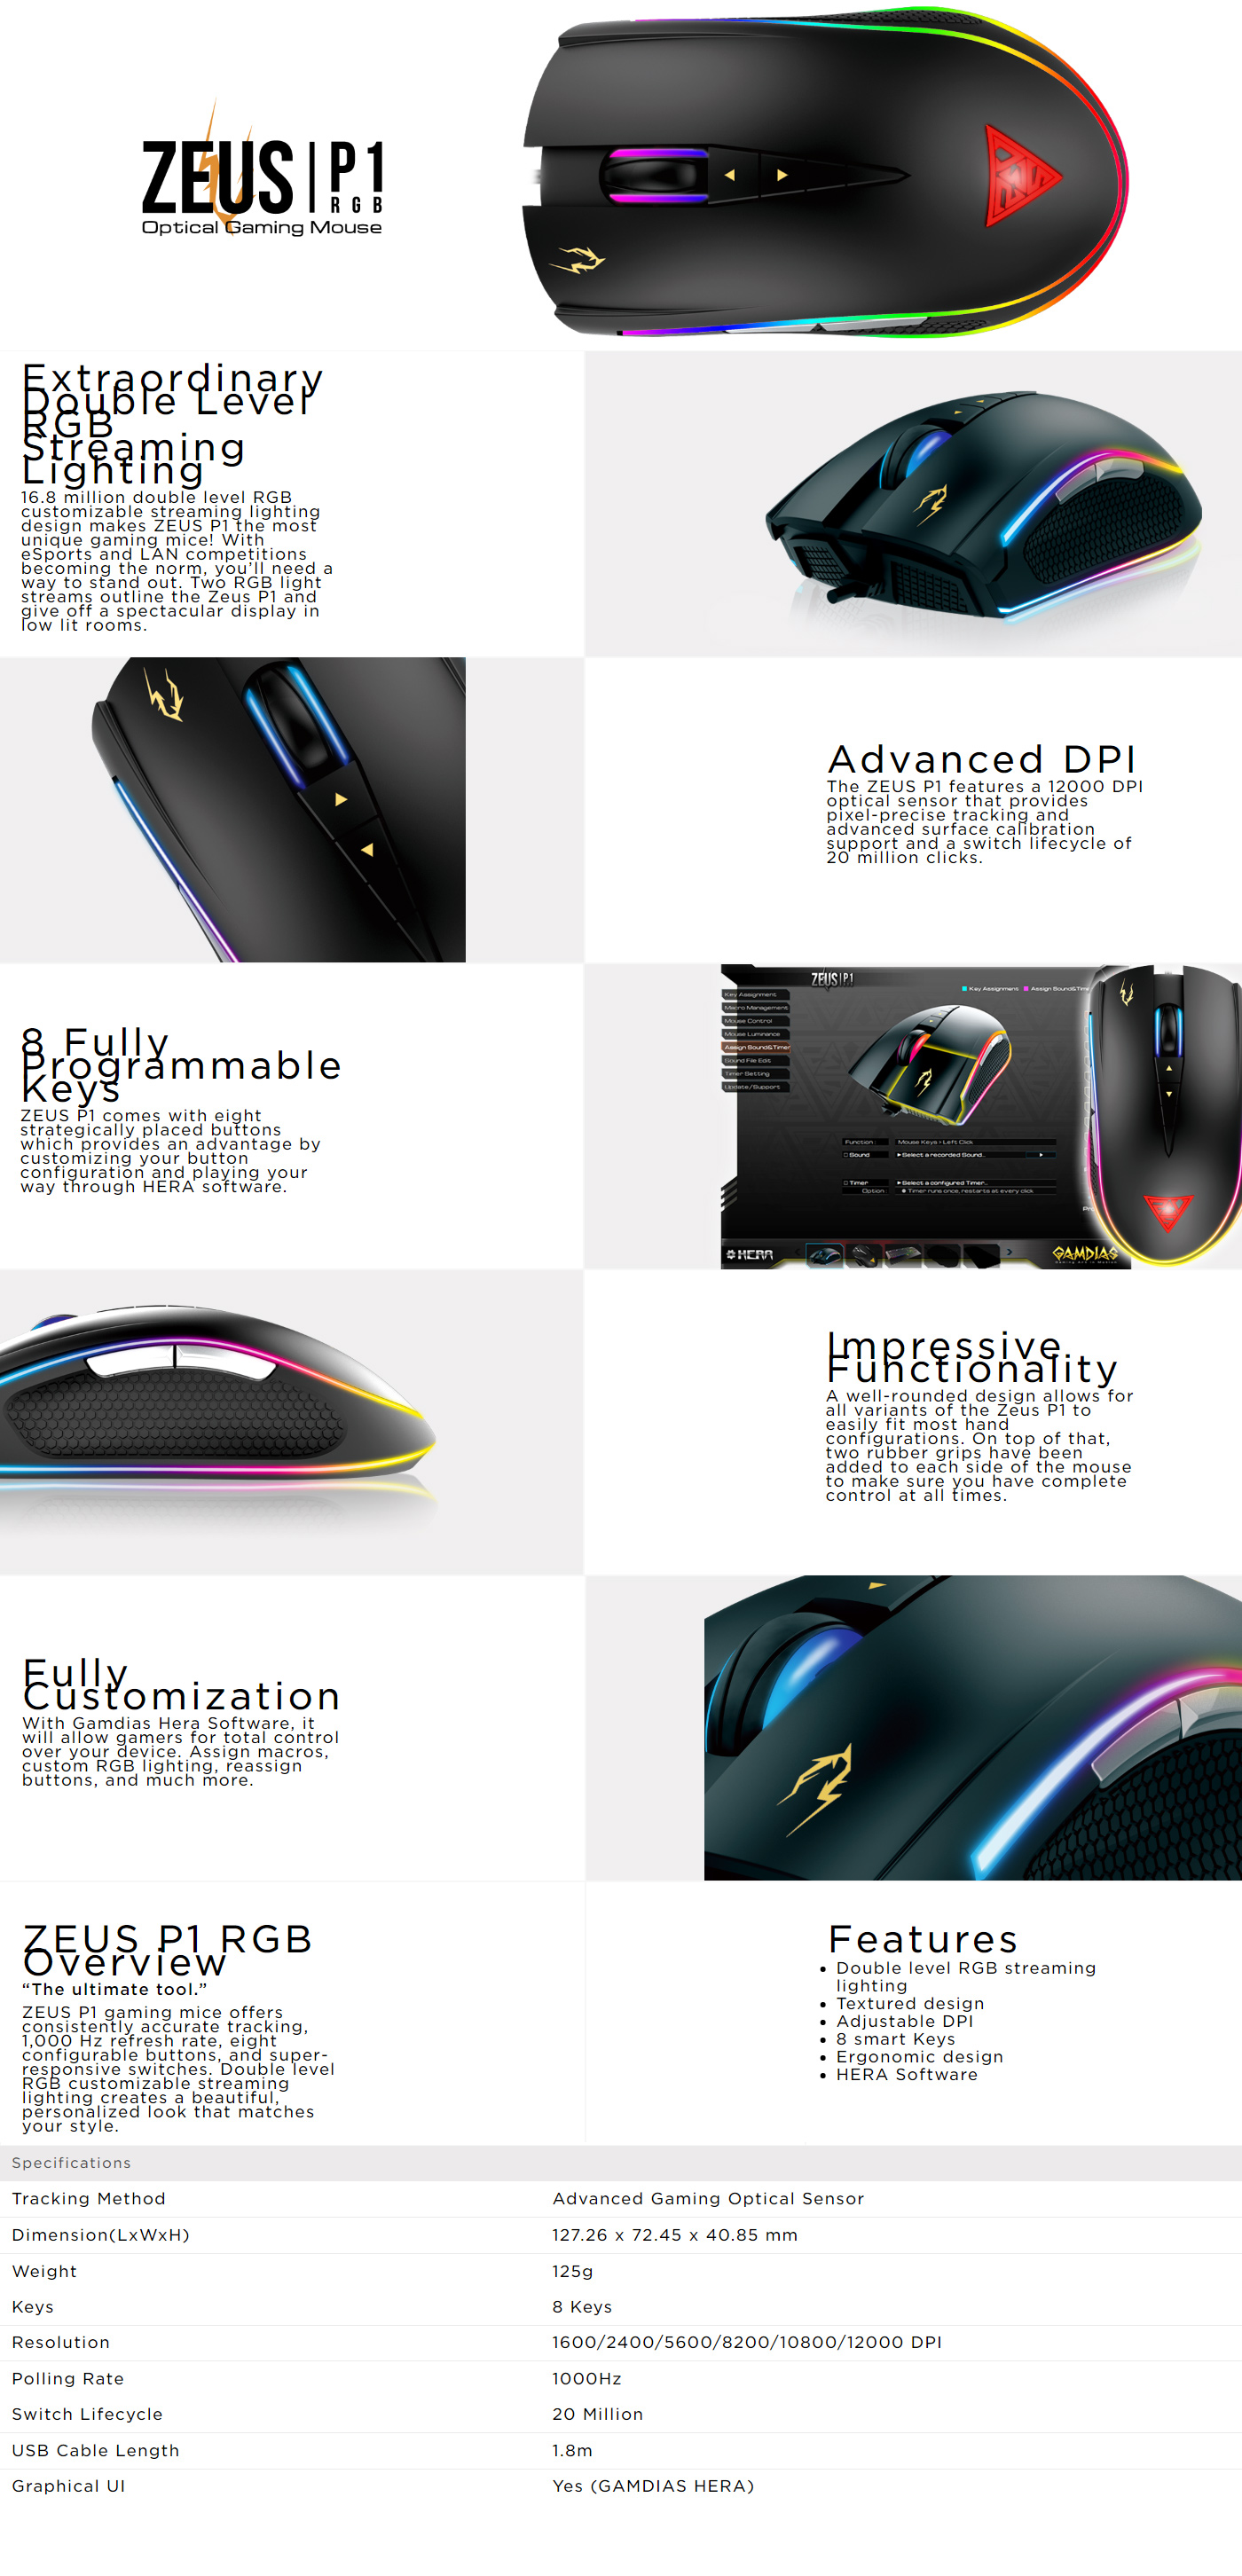  Buy Online Gamdias Zeus P1 RGB Optical Gaming Mouse